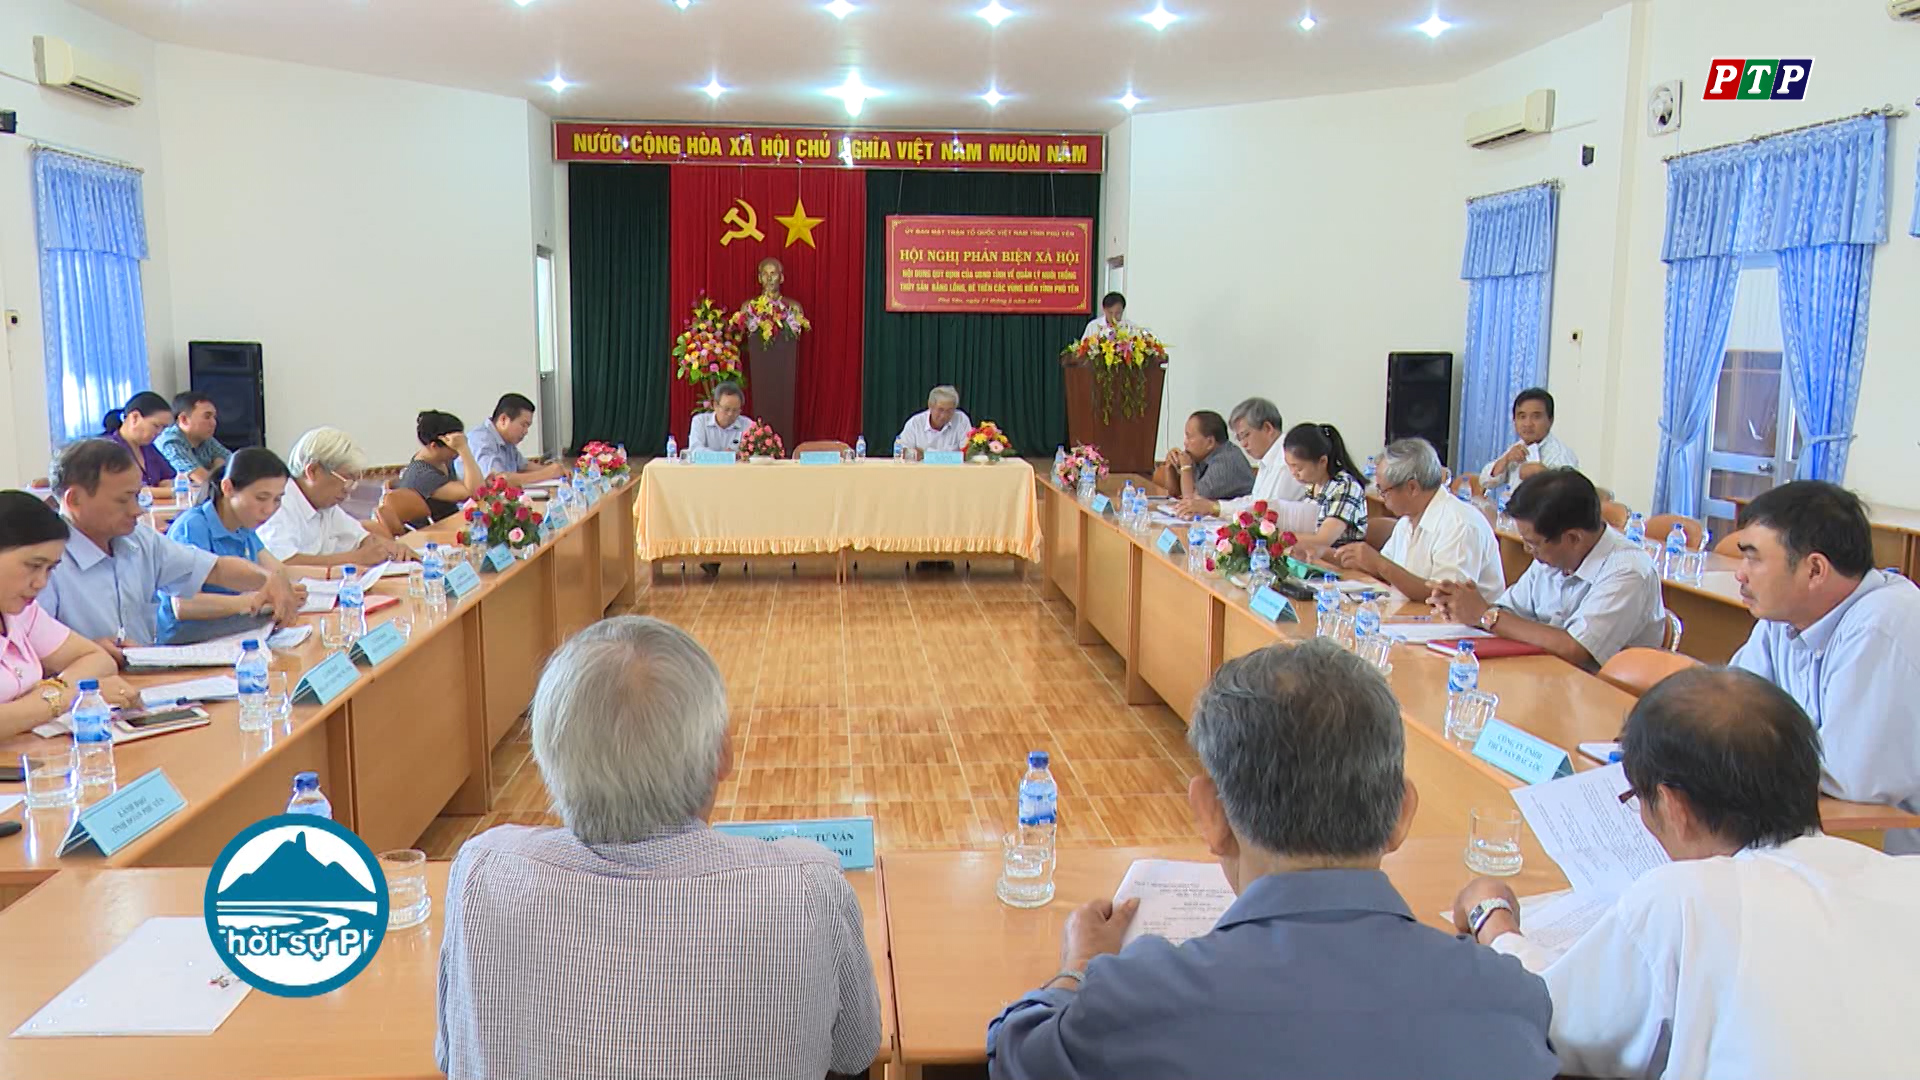 Phản biện xã hội Dự thảo Quy định về quản lý nuôi trồng thủy sản bằng lồng, bè trên các vùng biển tỉnh Phú Yên.